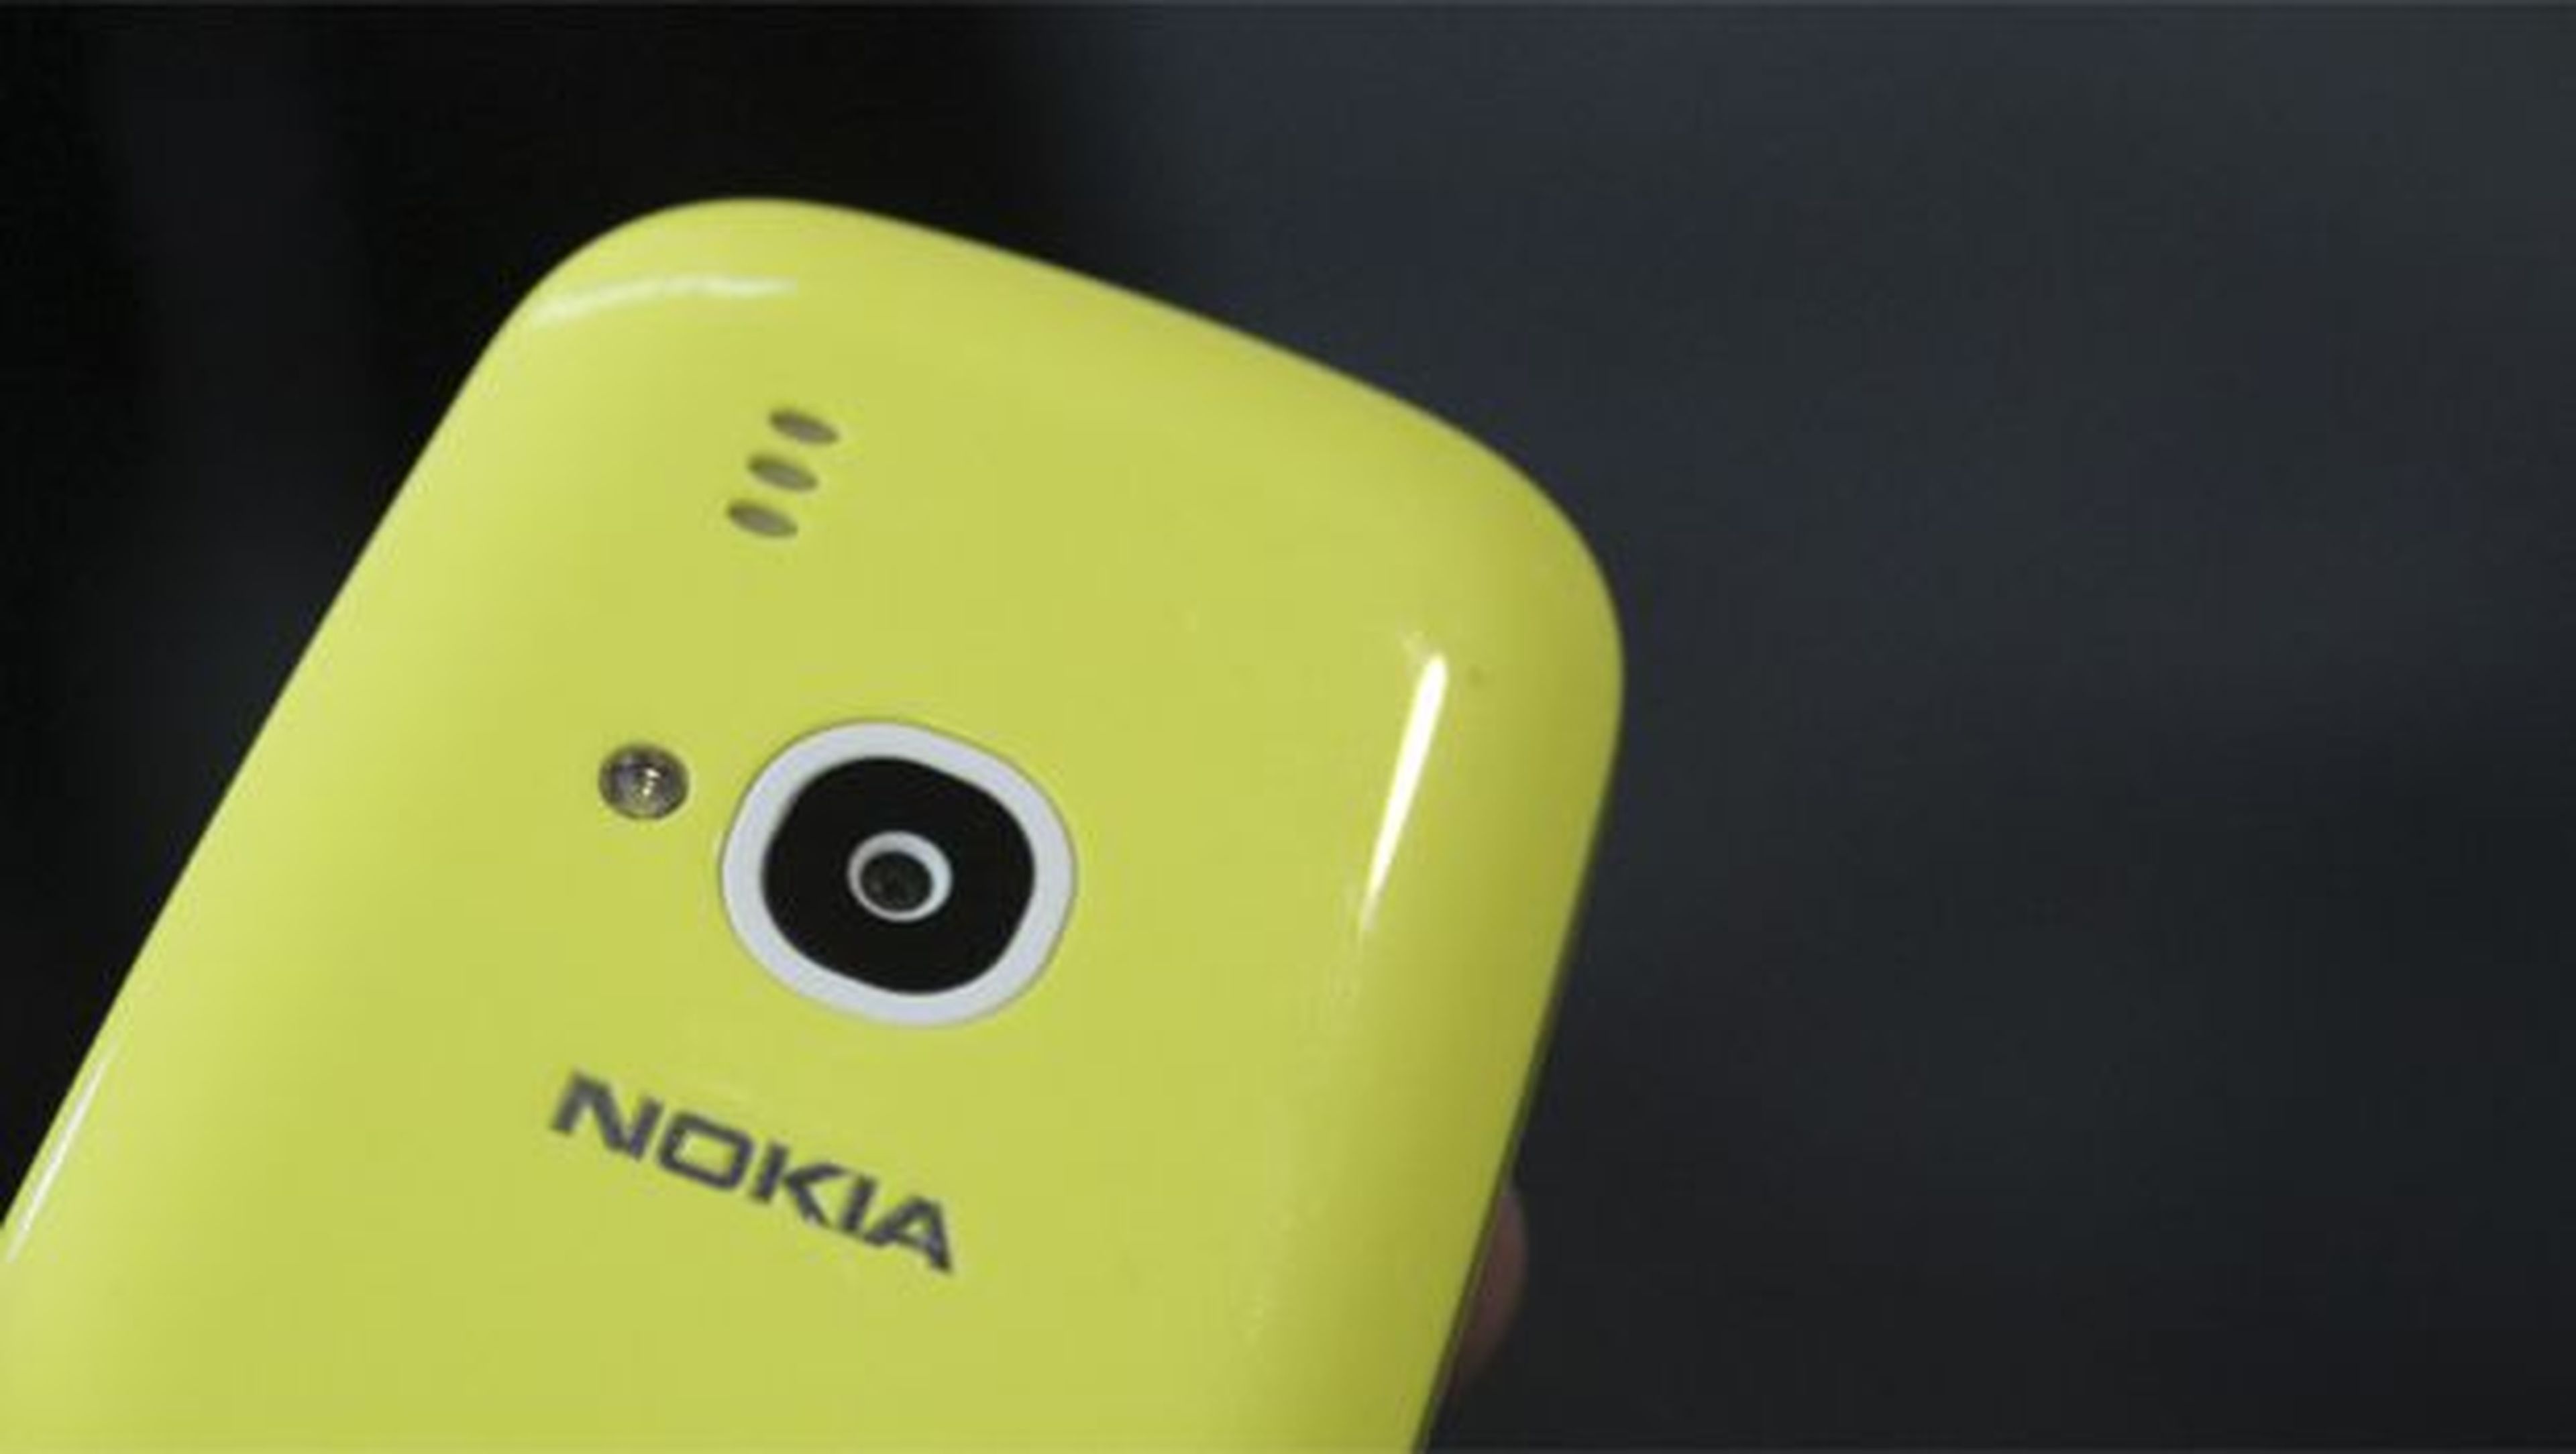 ¿Merece la pena comprar el Nokia 3310? Razones a favor y en contra